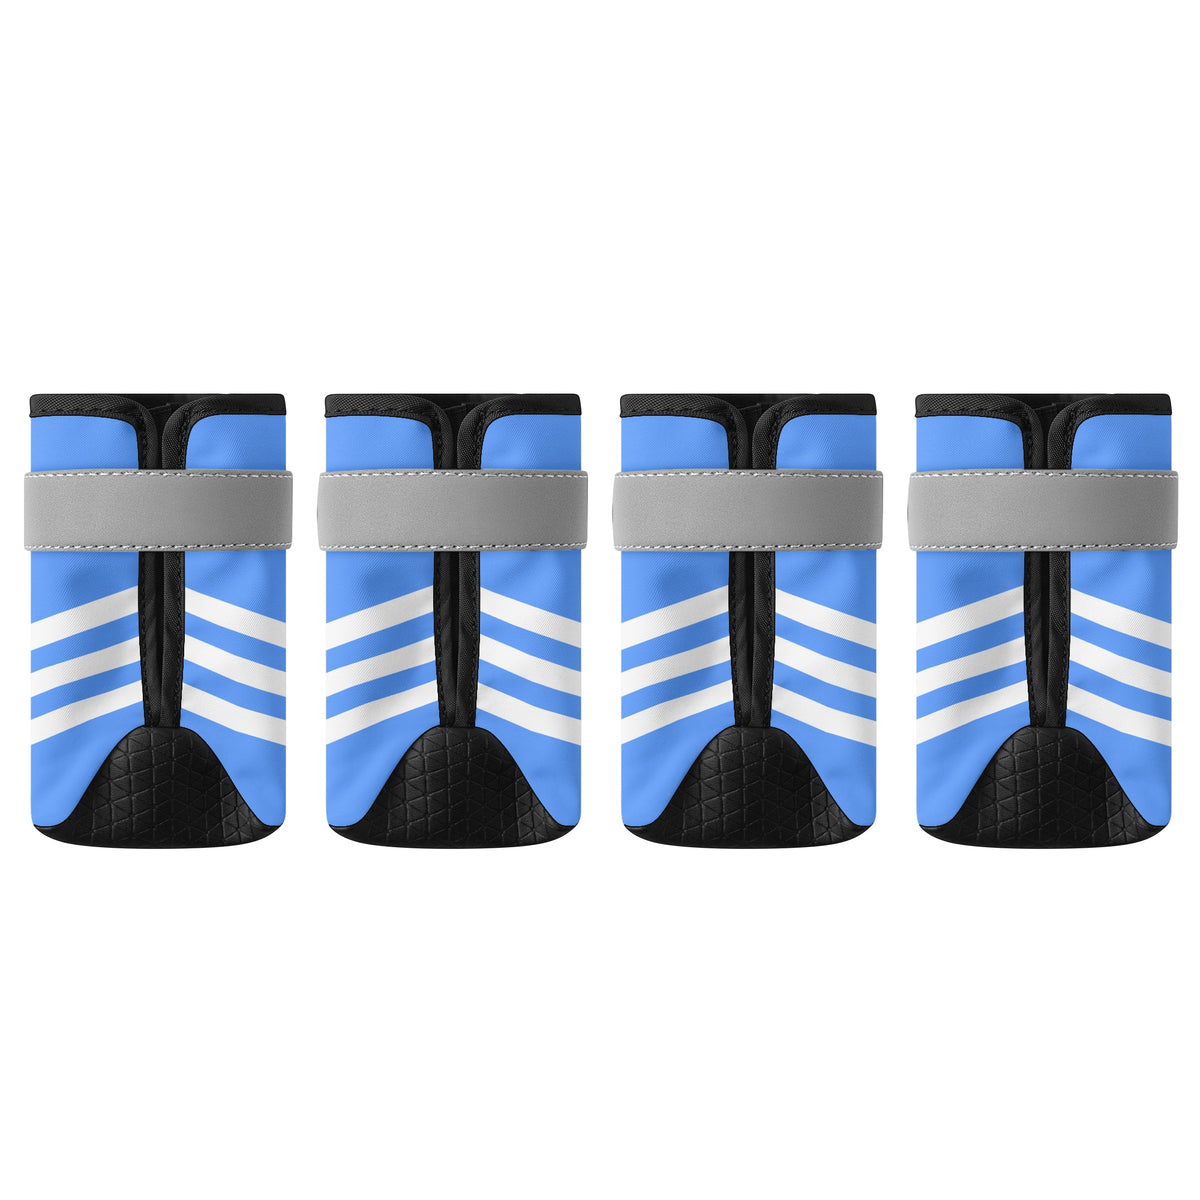 Retro Blue and White Striped Non Slip Dog Socks